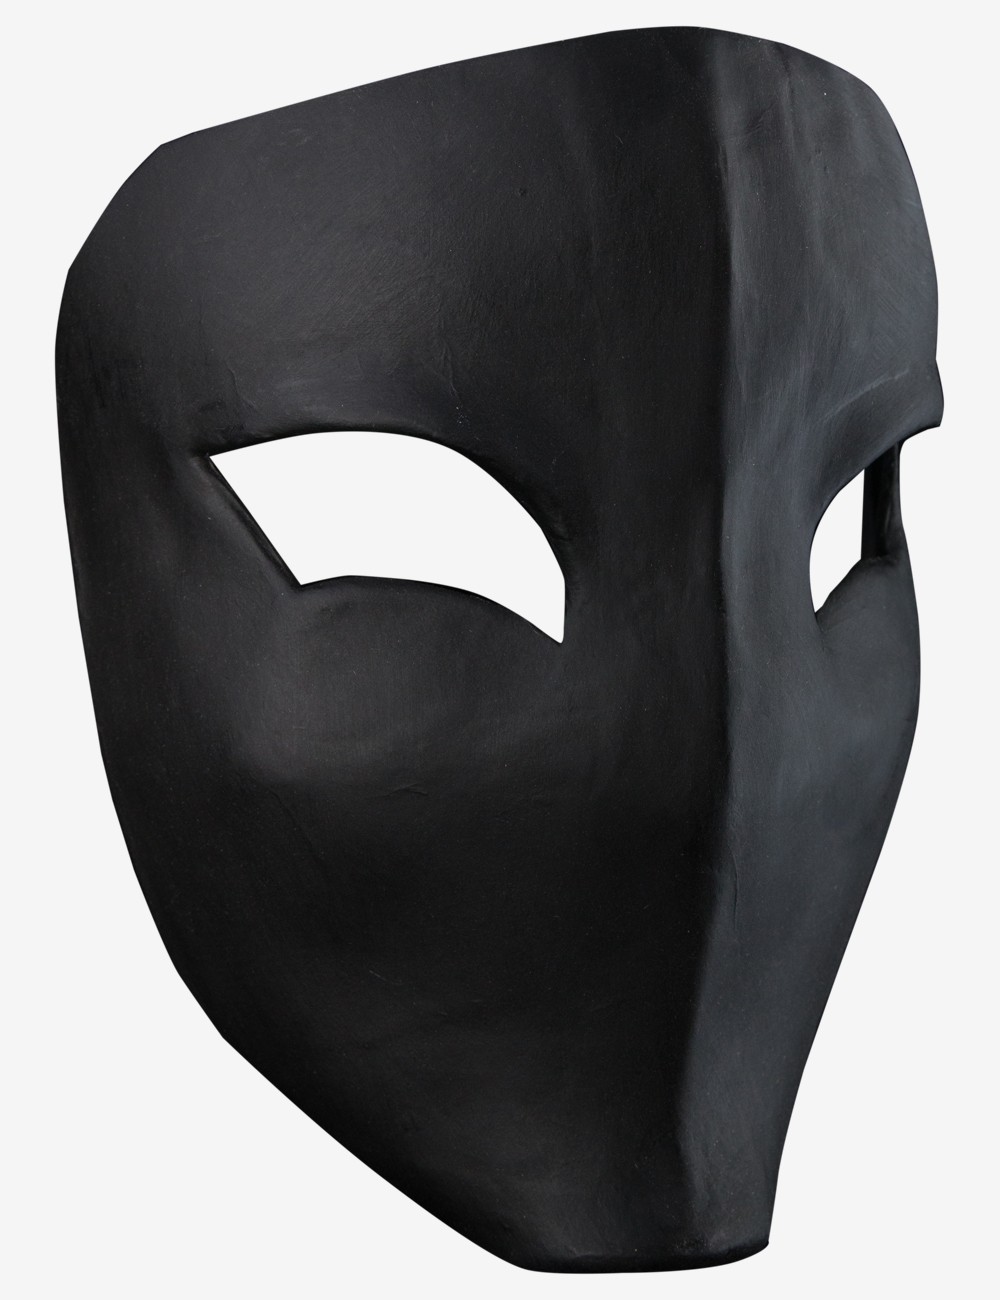 Black Vega - Mardi Gras Mask made in Italy